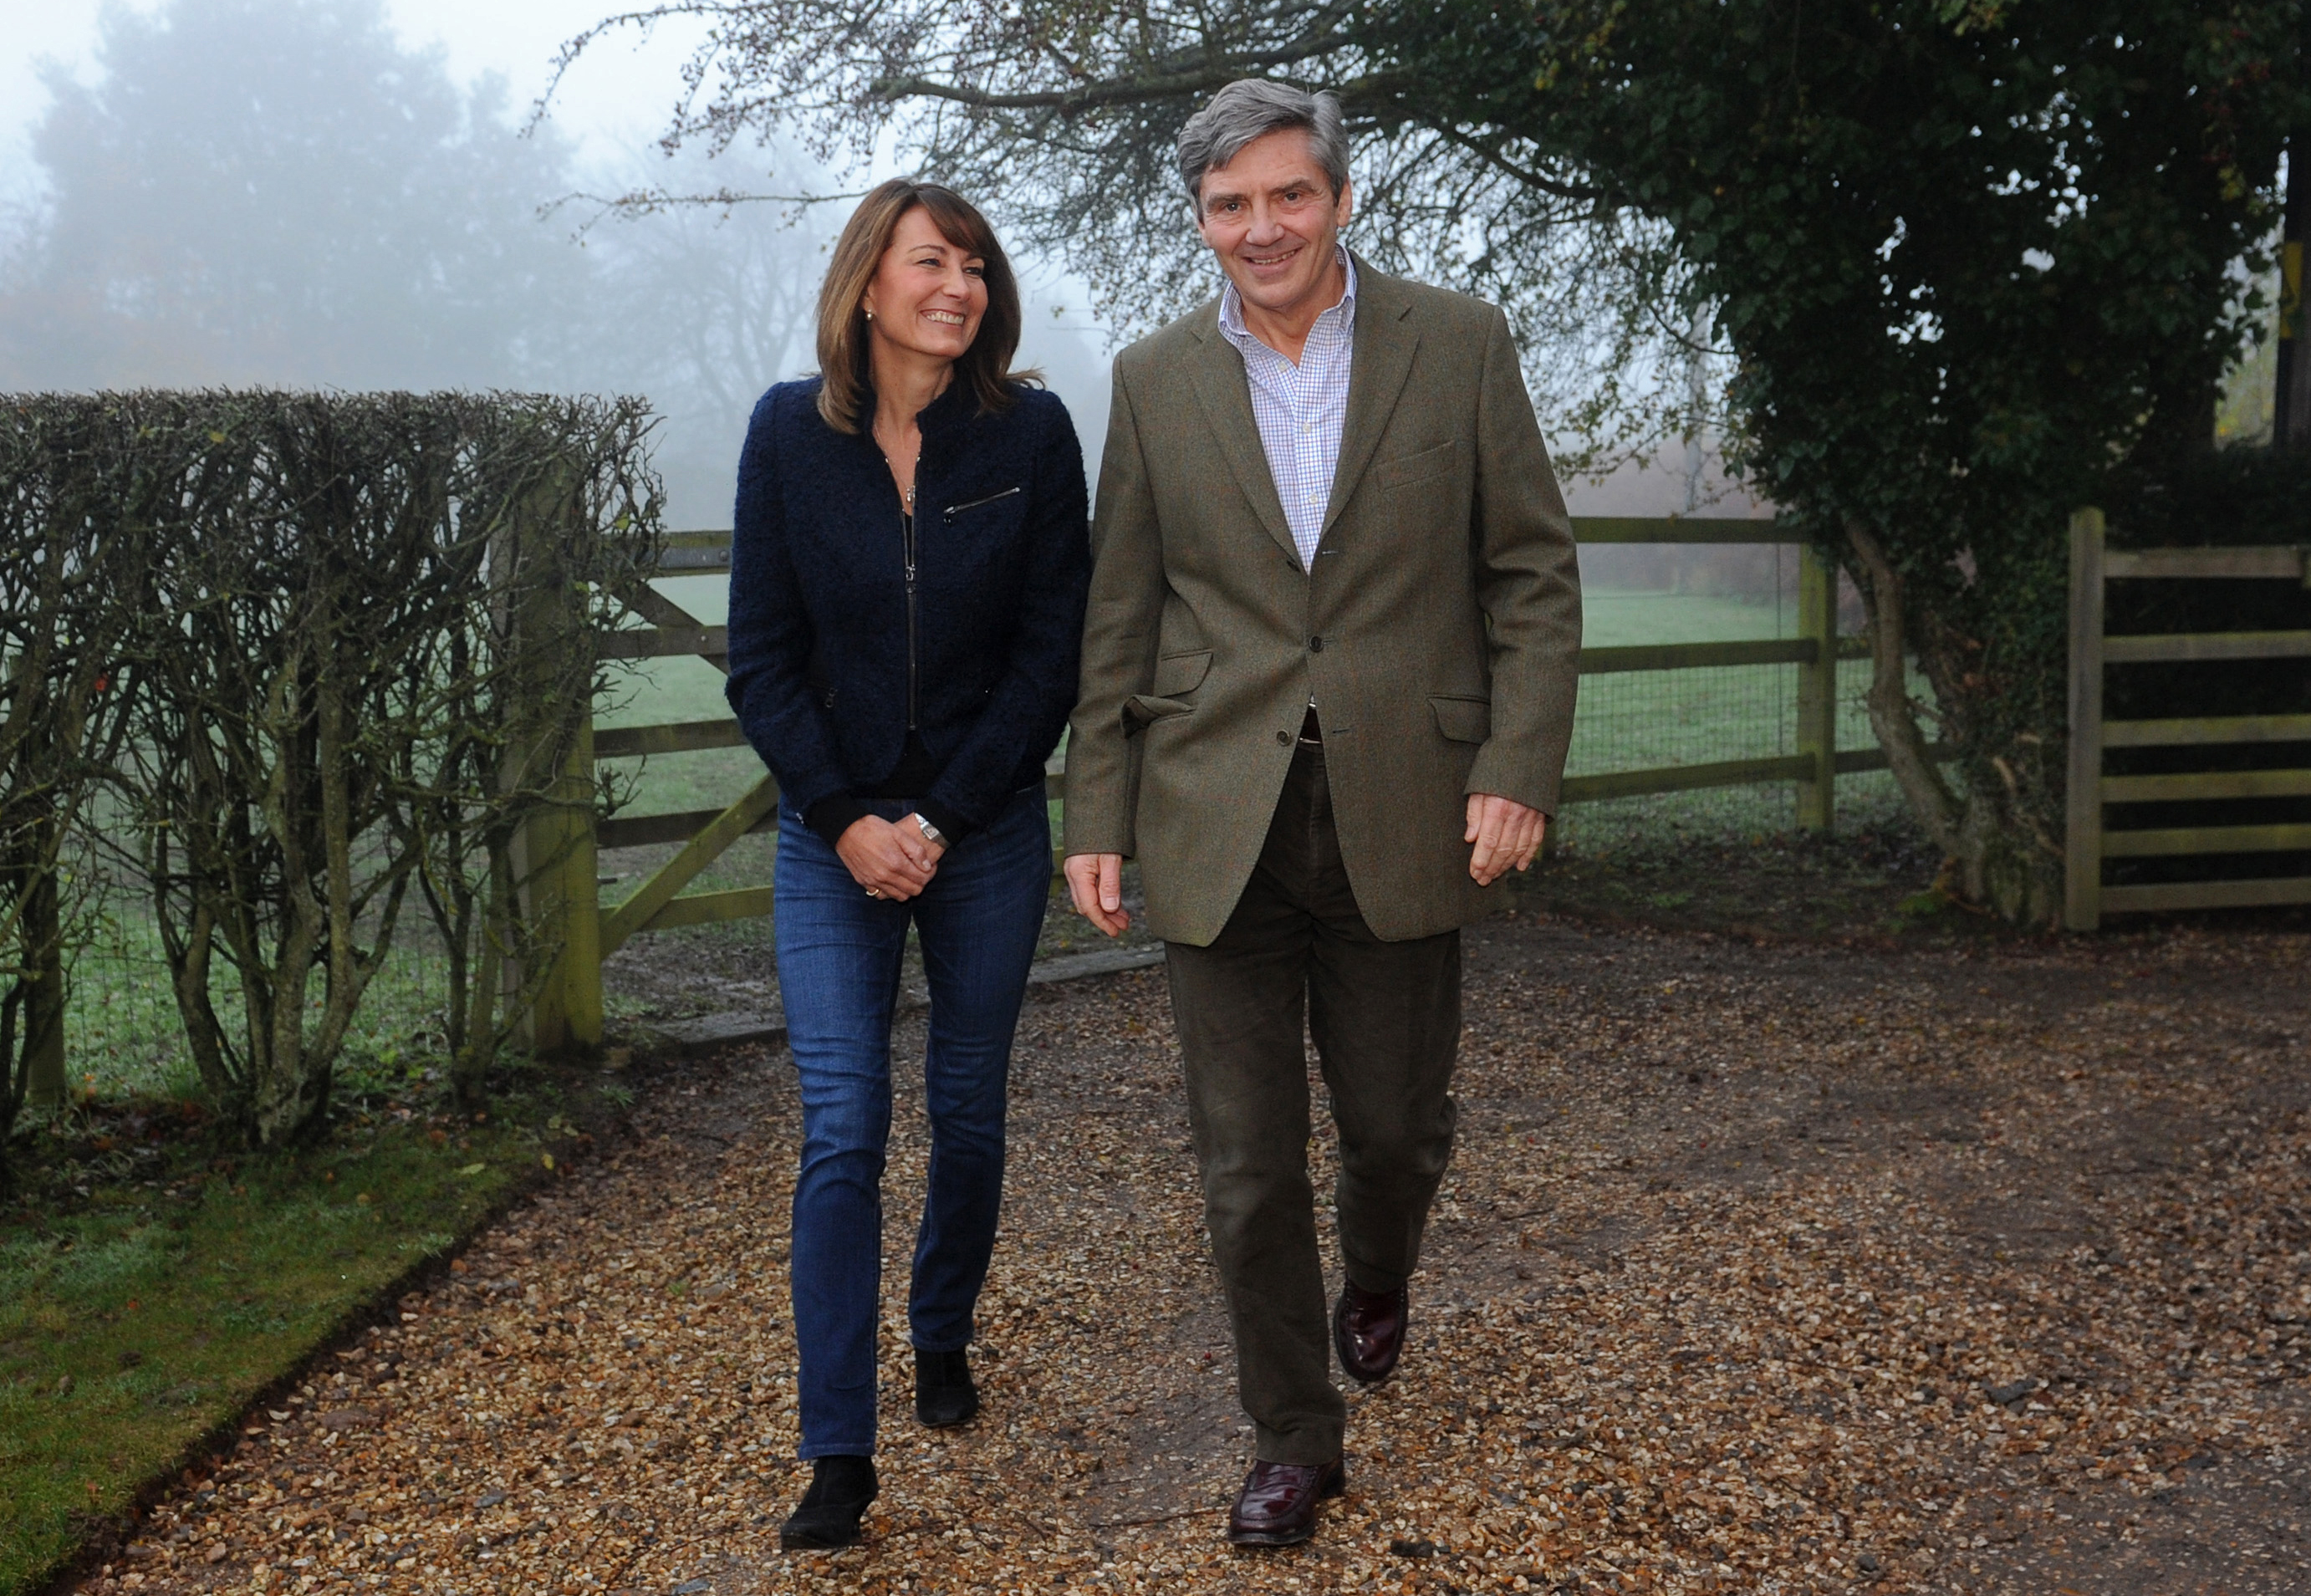 Michael et Carole Middleton posent pour une photo dans leur maison du Berkshire, dans le sud de l'Angleterre, le 16 novembre 2010. | Source : Getty Images